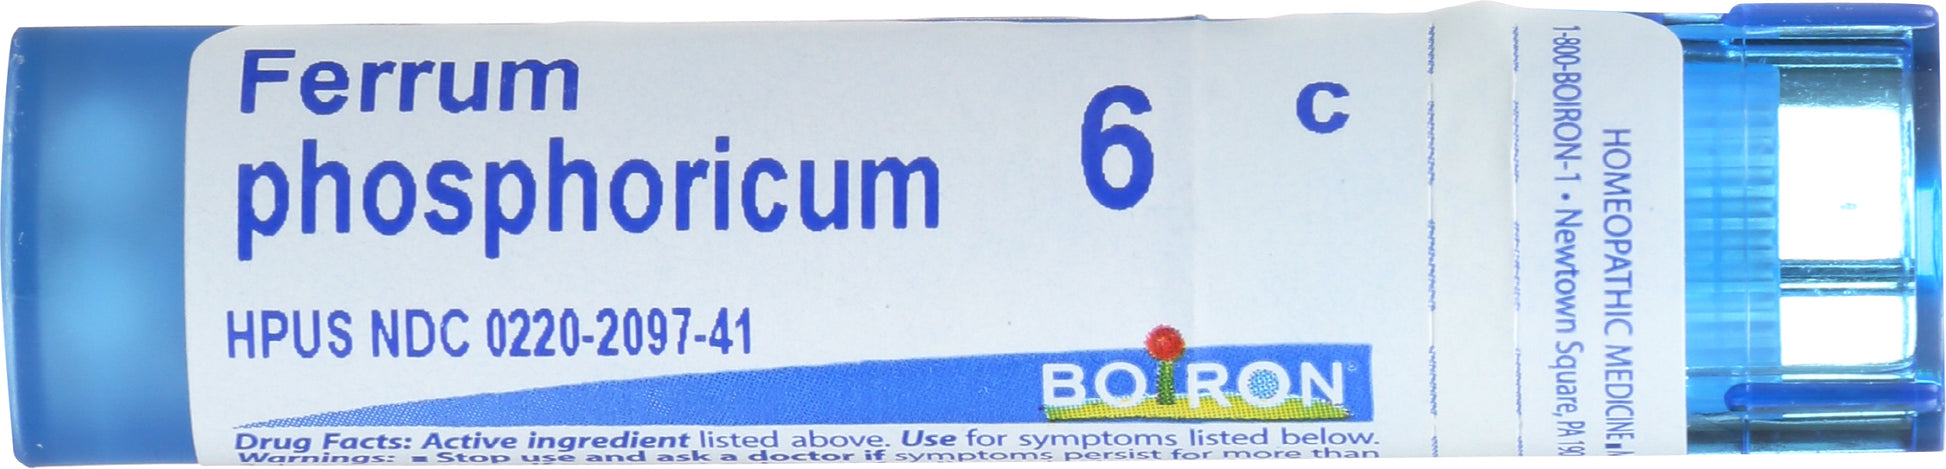 Boiron Ferrum phosphoricum 6c